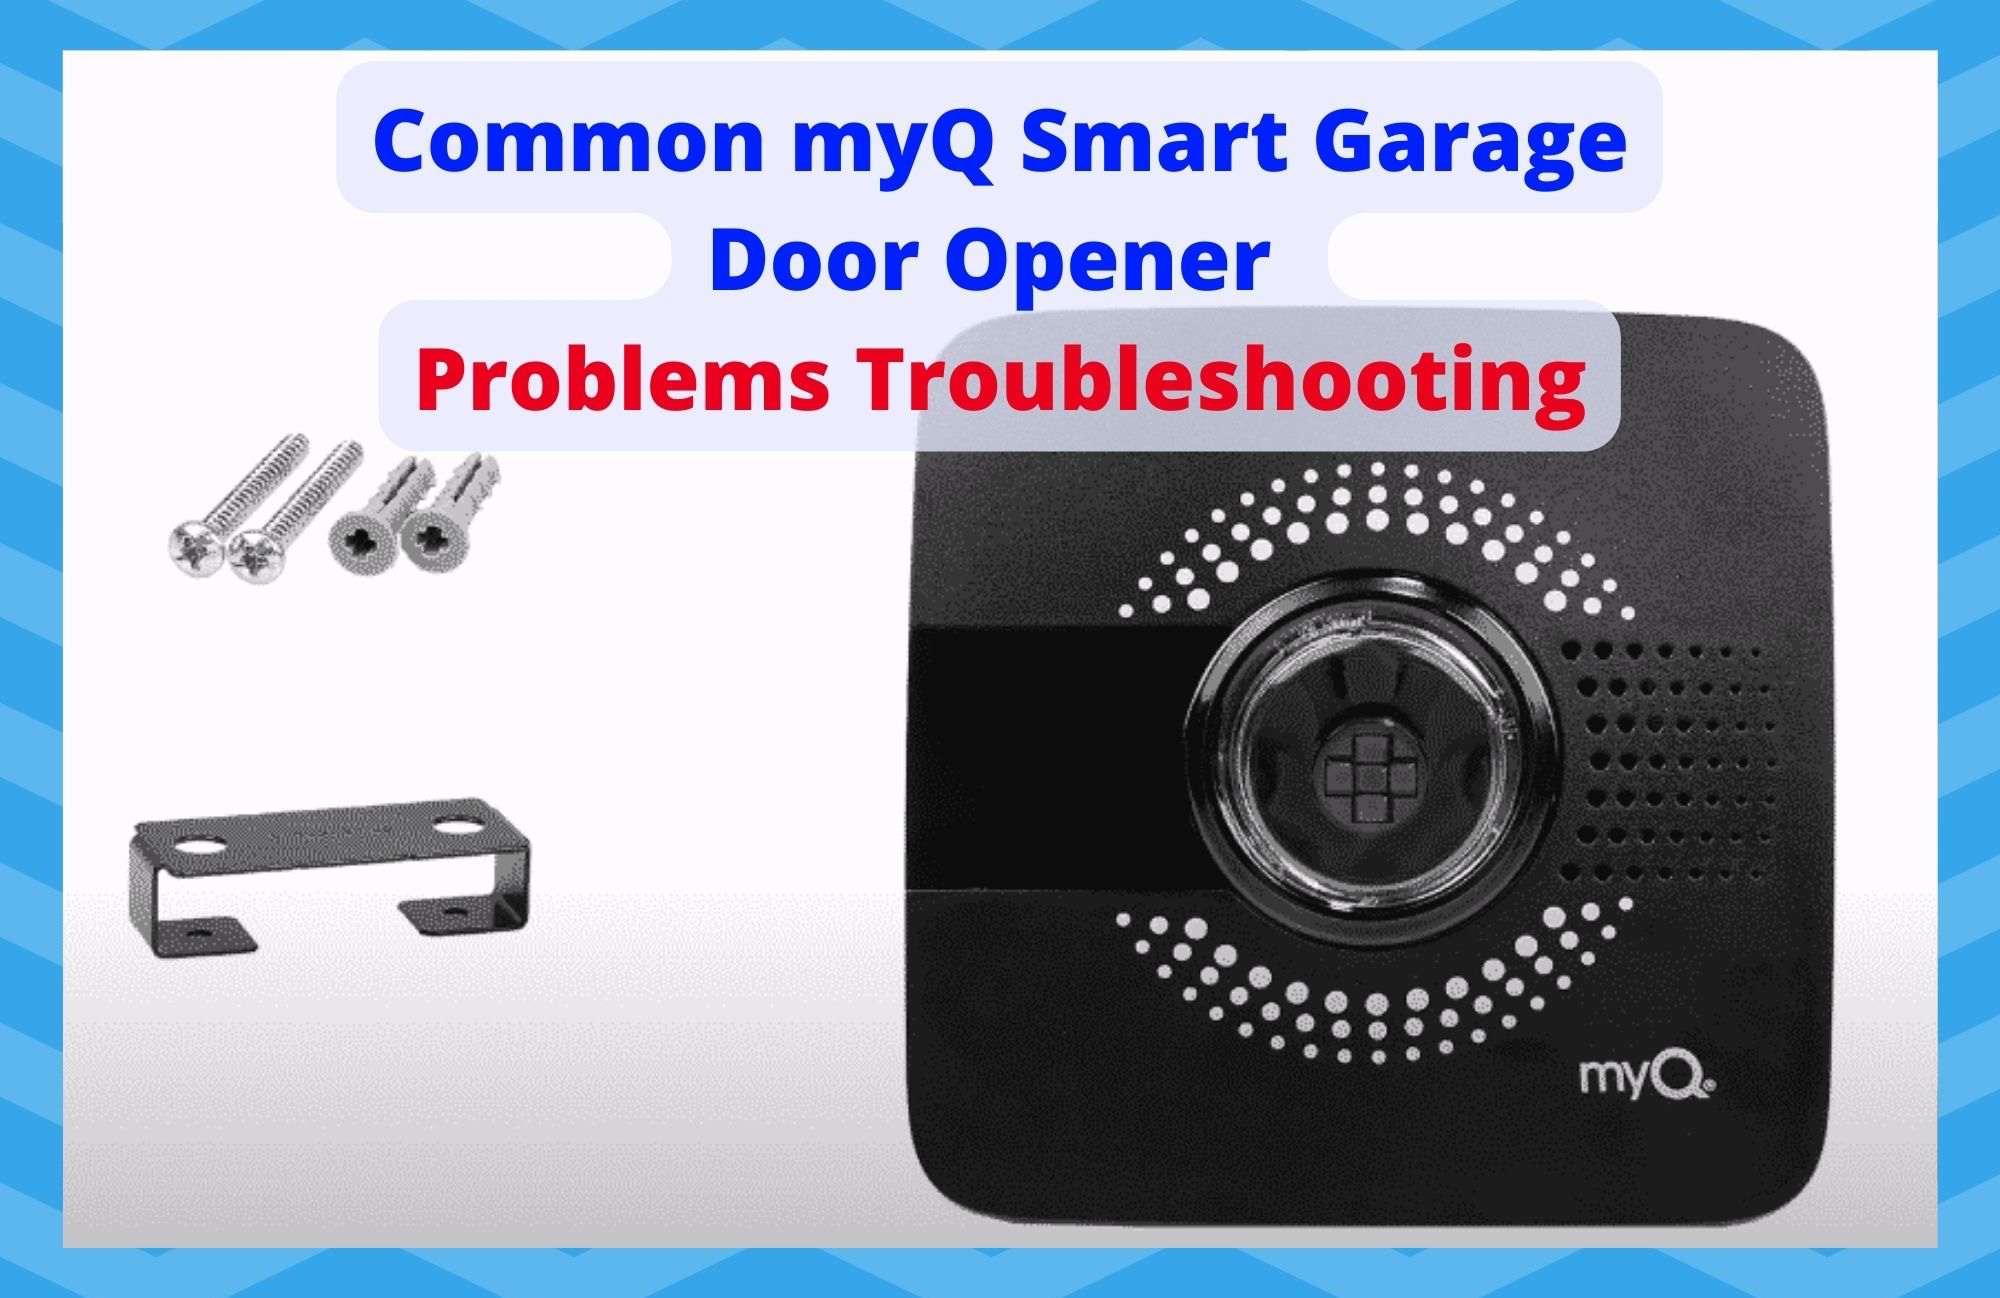 Common myQ Smart Garage Door Opener Problems Troubleshooting